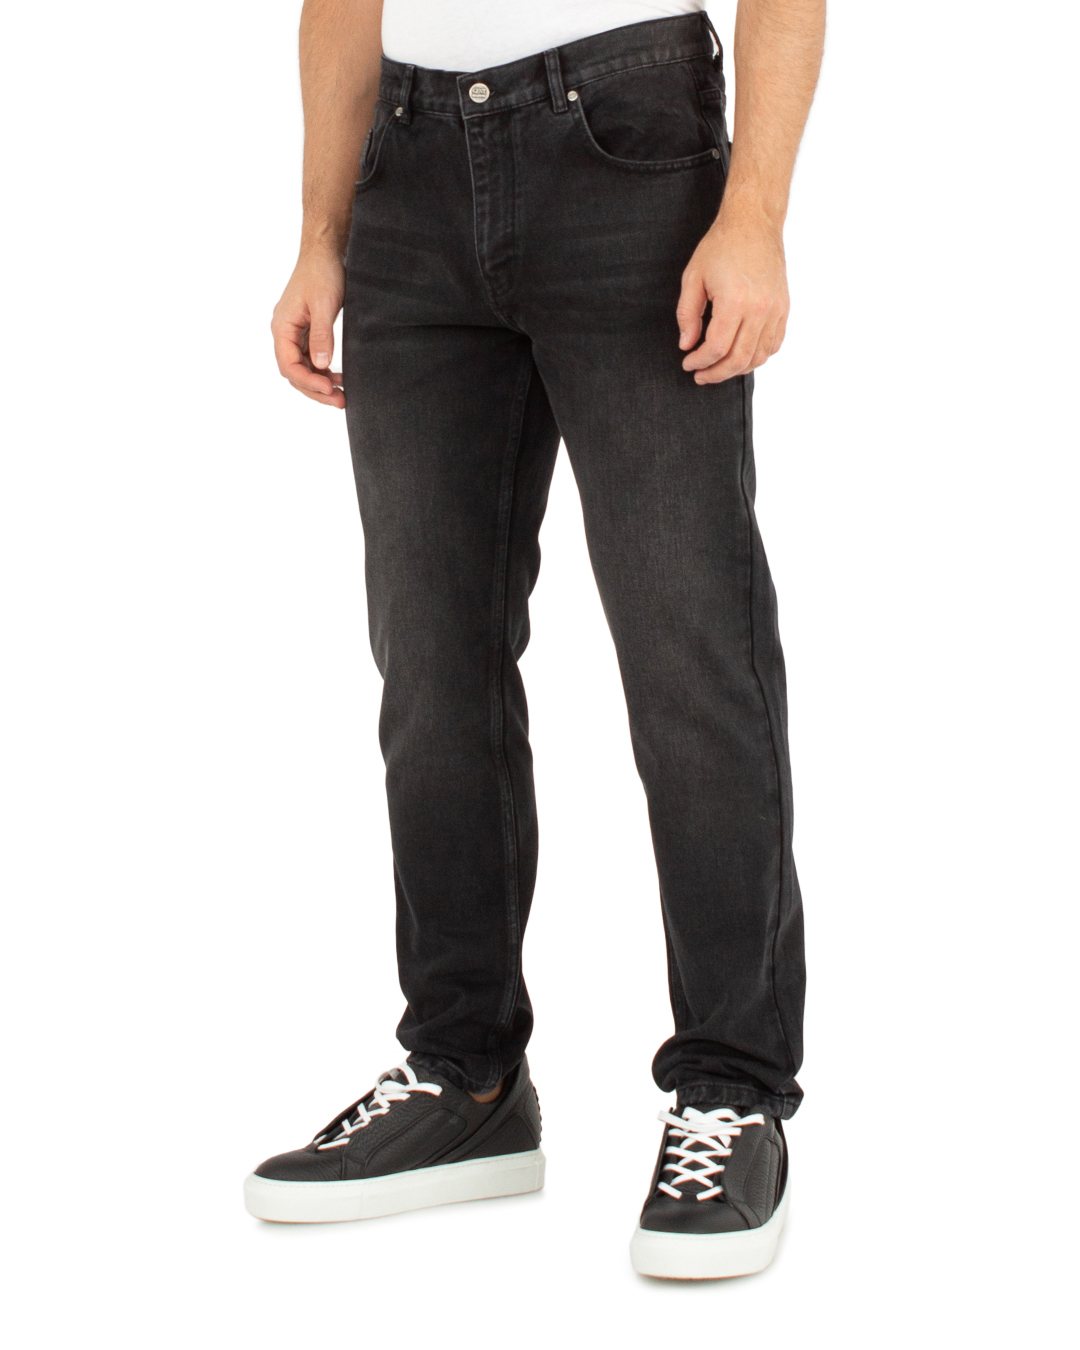 джинсы Gent Manners 01_02_D_BLV серый 30, размер 30 - фото 3